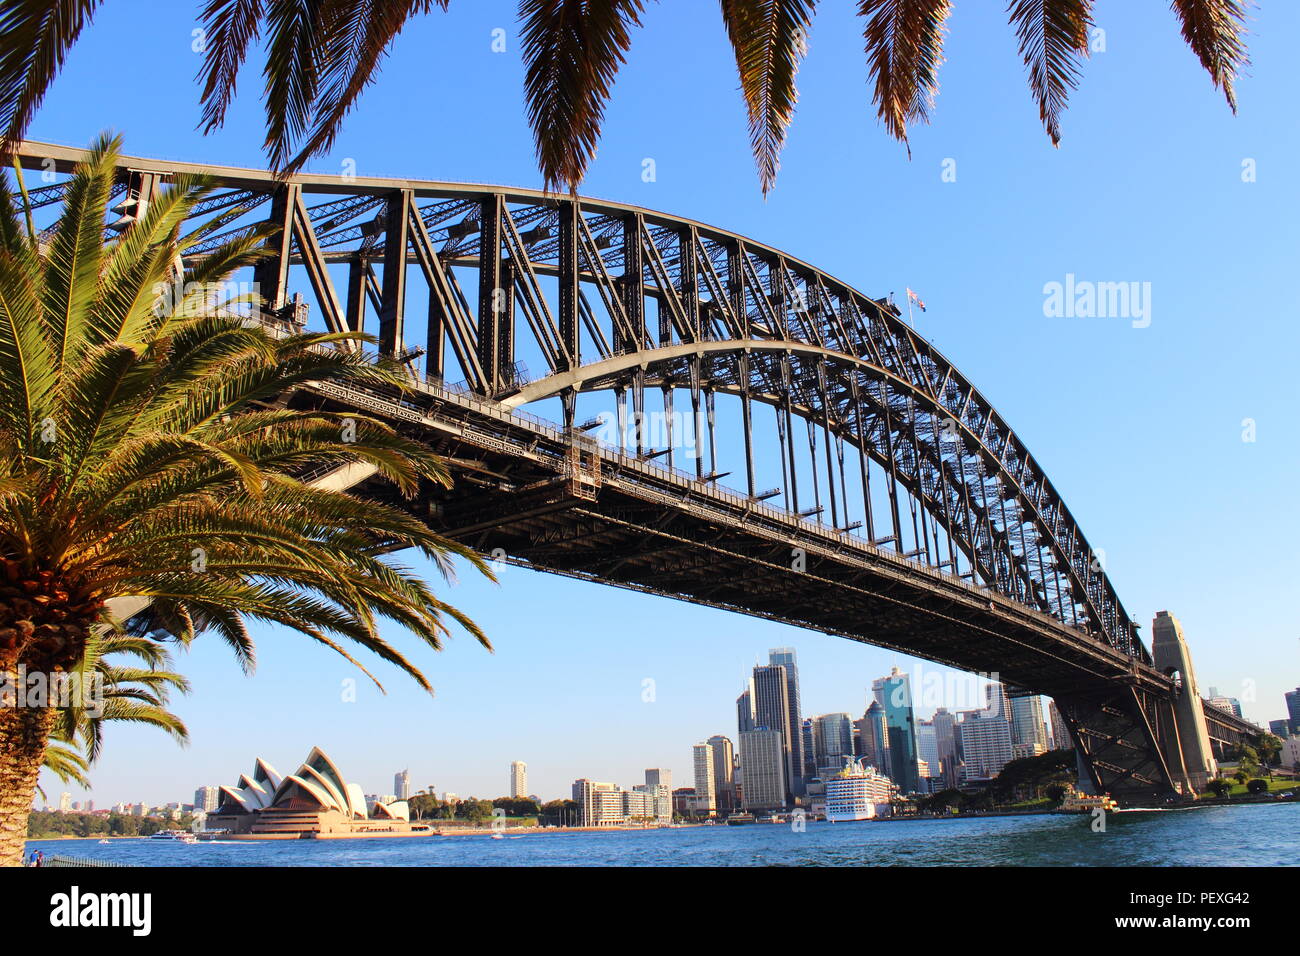 Sydney Harbour au coucher du soleil - Opéra Sydney - Harbour Bridge Sydney Banque D'Images